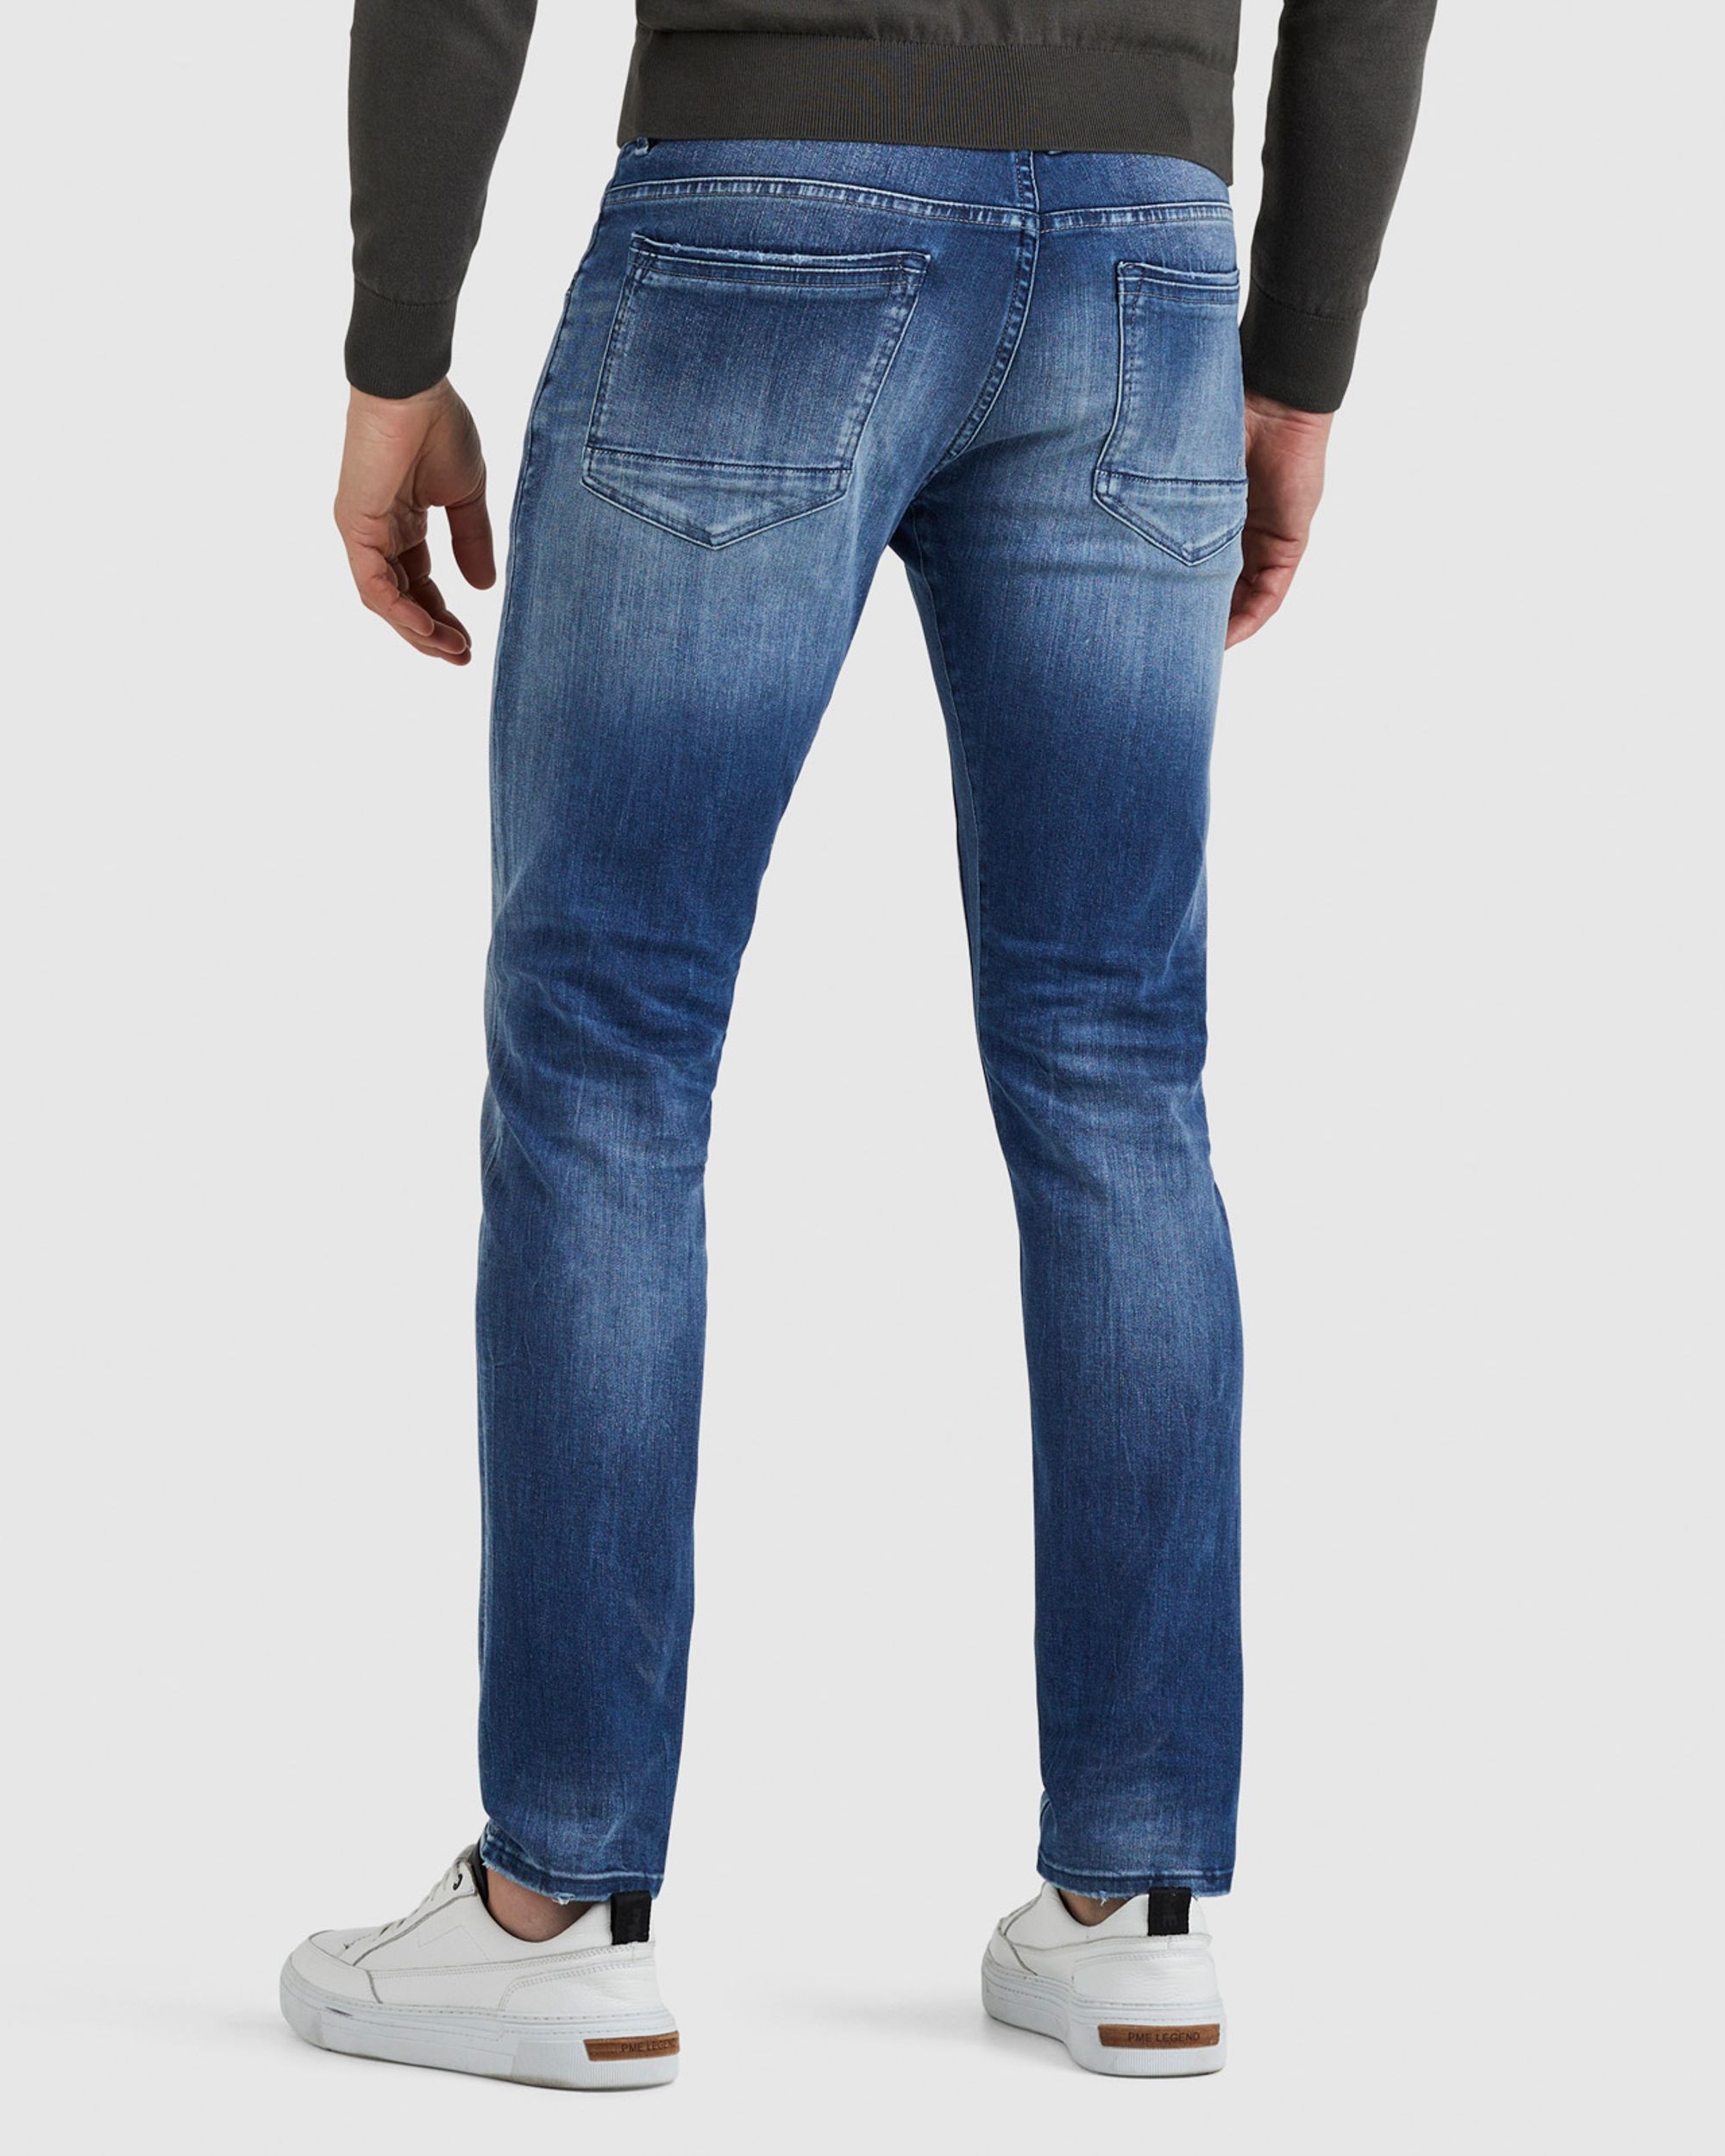 PME Legend Tailwheel Jeans Blauw 087036-001-30/32